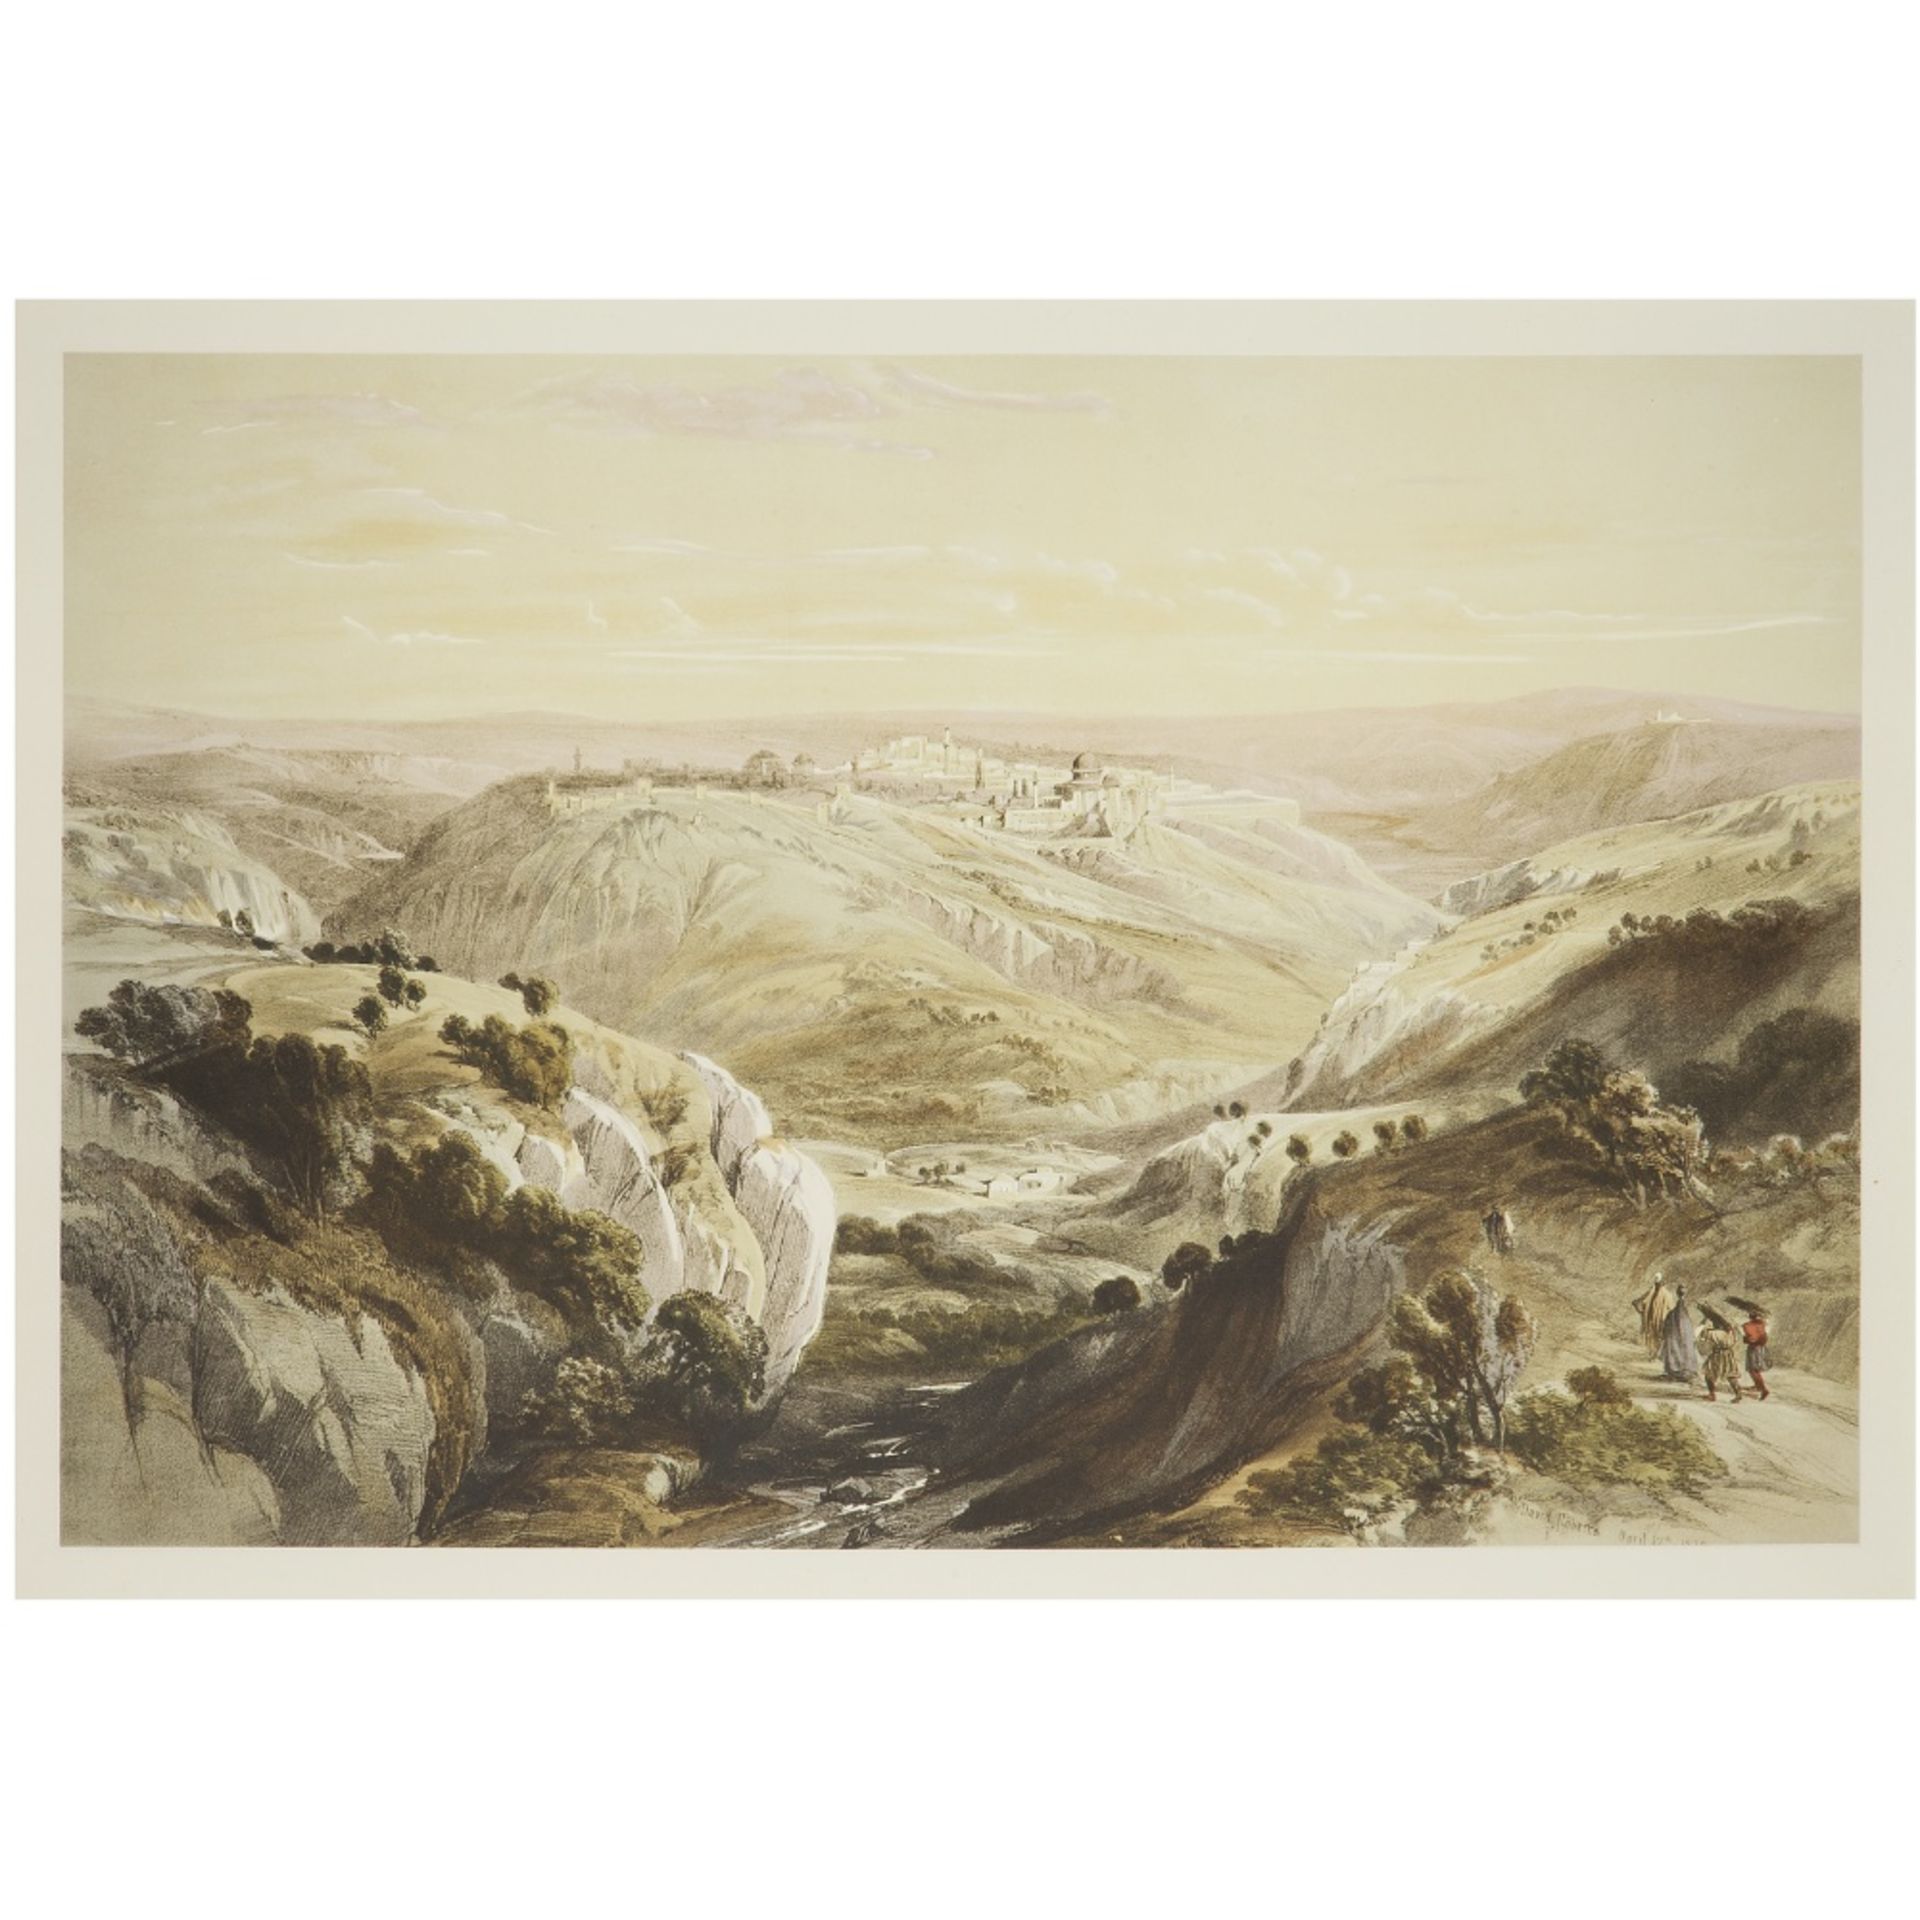 DAVID ROBERTS (1796-1864) SUITE DE QUATRE GRAVURES EN COULEURS: -" ENTRÉE DE PETRA" 16 mars - Bild 5 aus 5